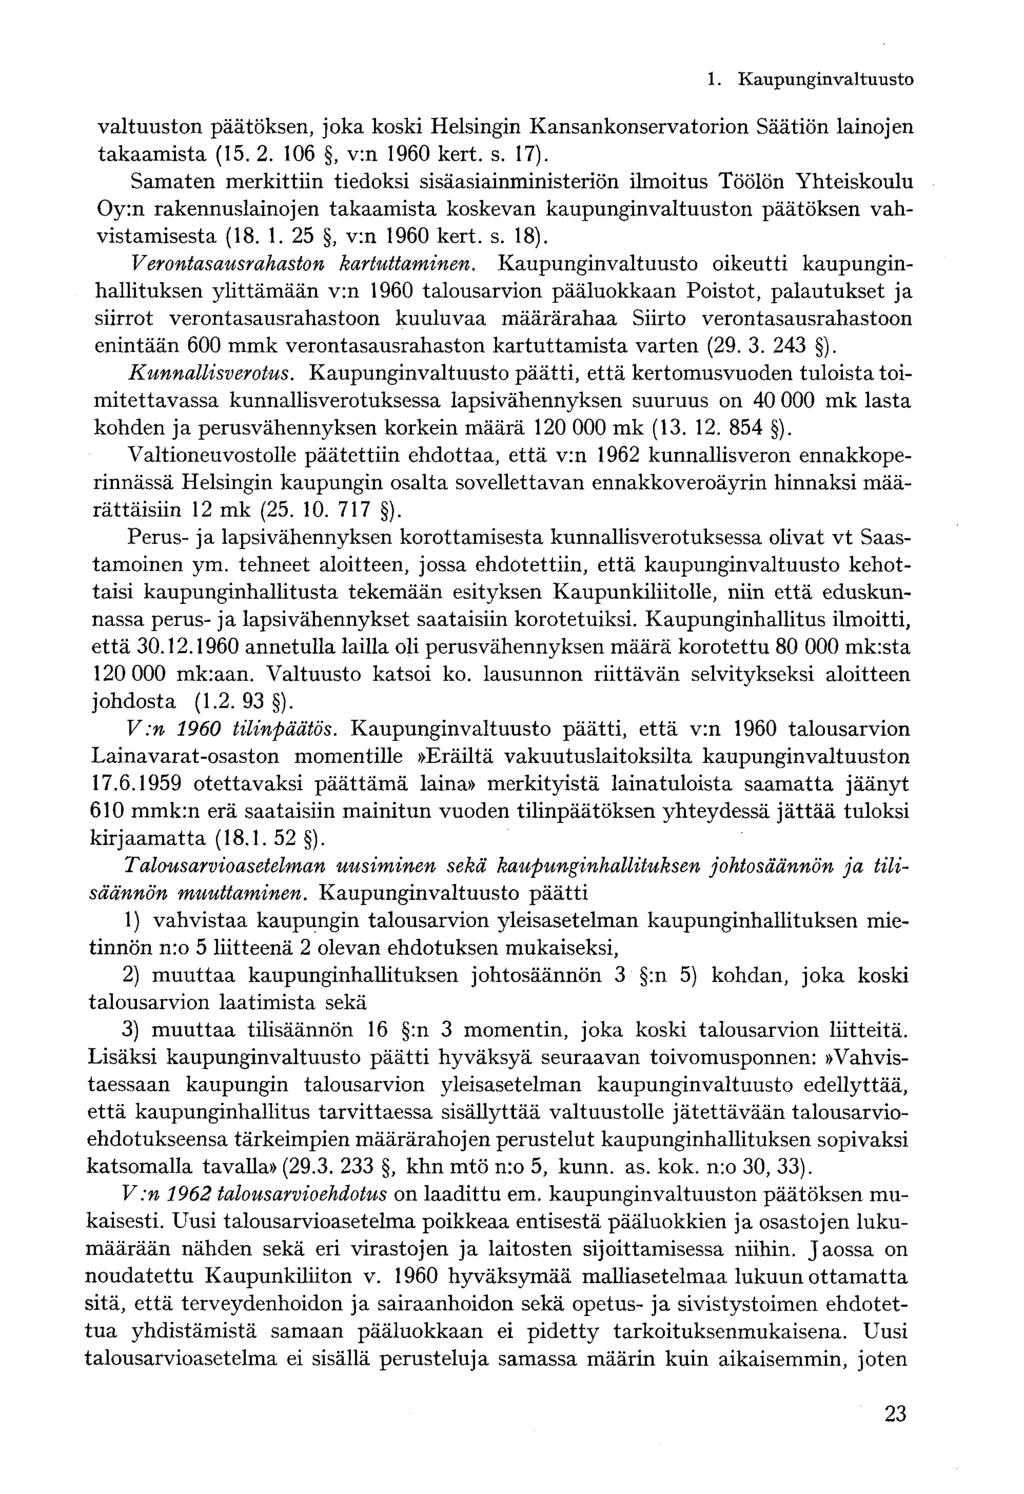 valtuuston päätöksen, joka koski Helsingin Kansankonservatorion Säätiön lainojen takaamista (15. 2. 106, v:n 1960 kert. s. 17).